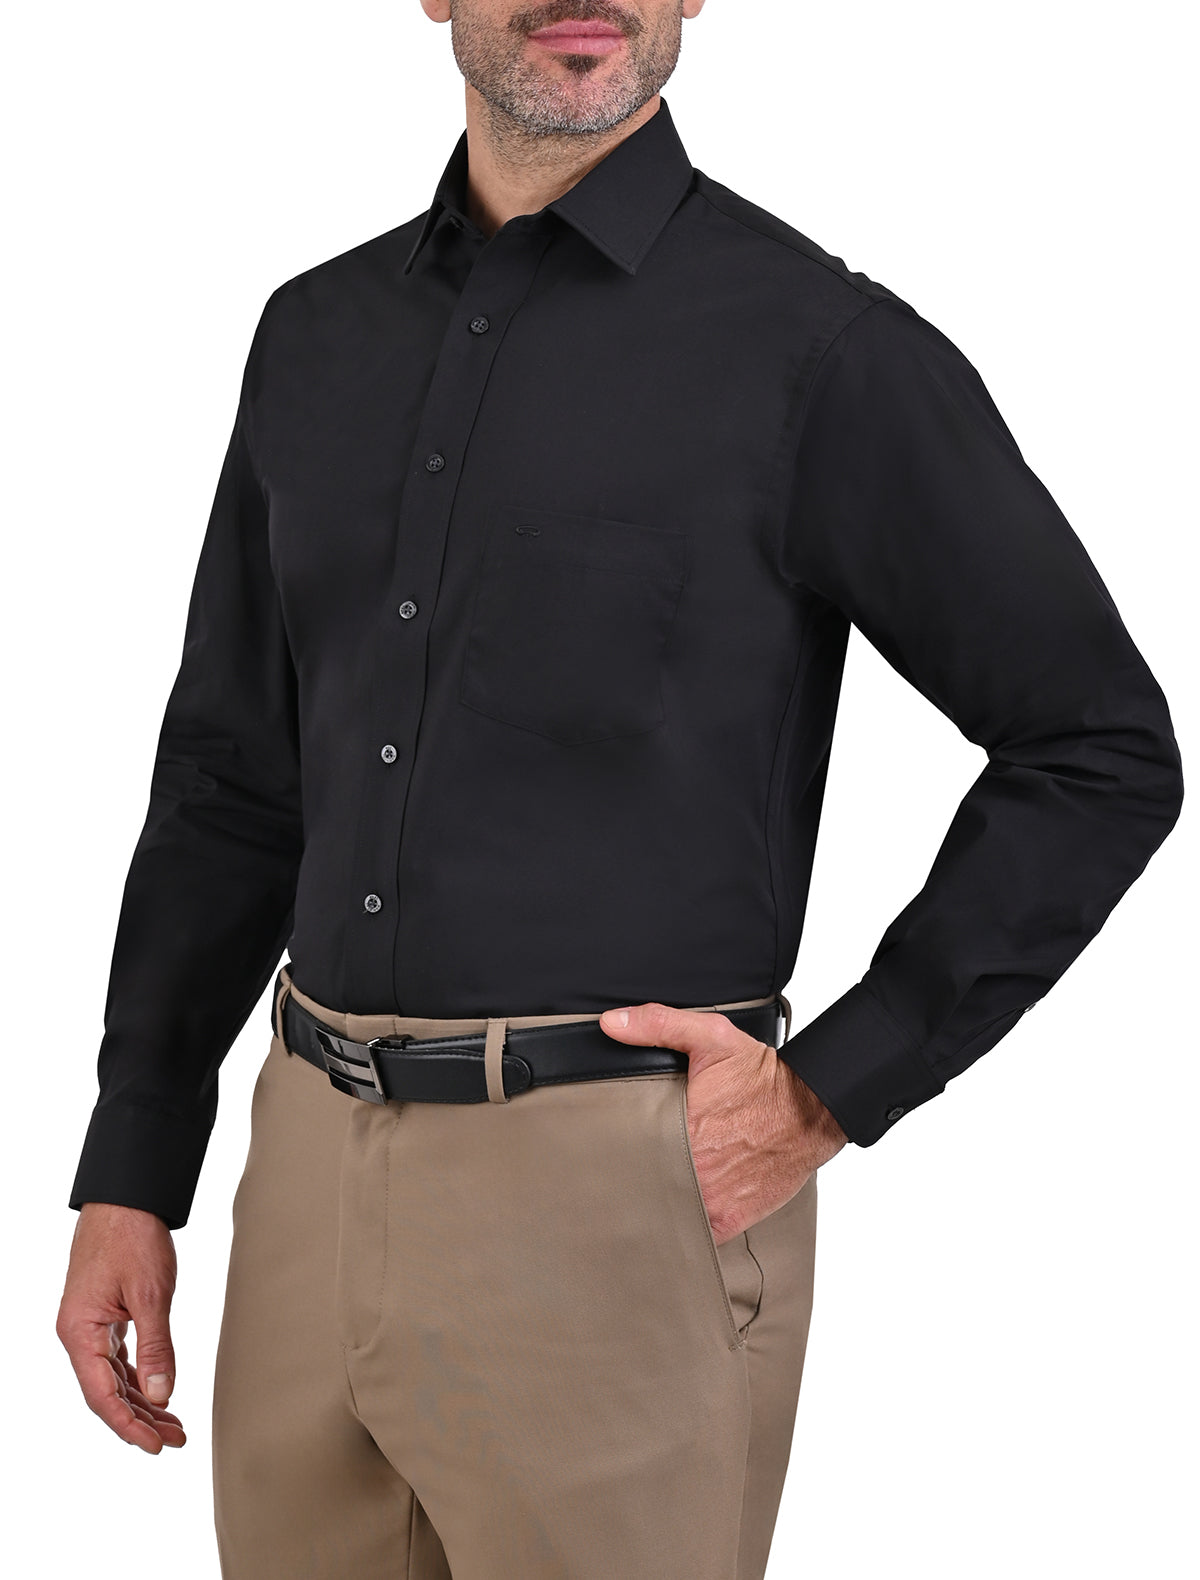 Un hombre con una camisa negra y pantalones blancos se para frente